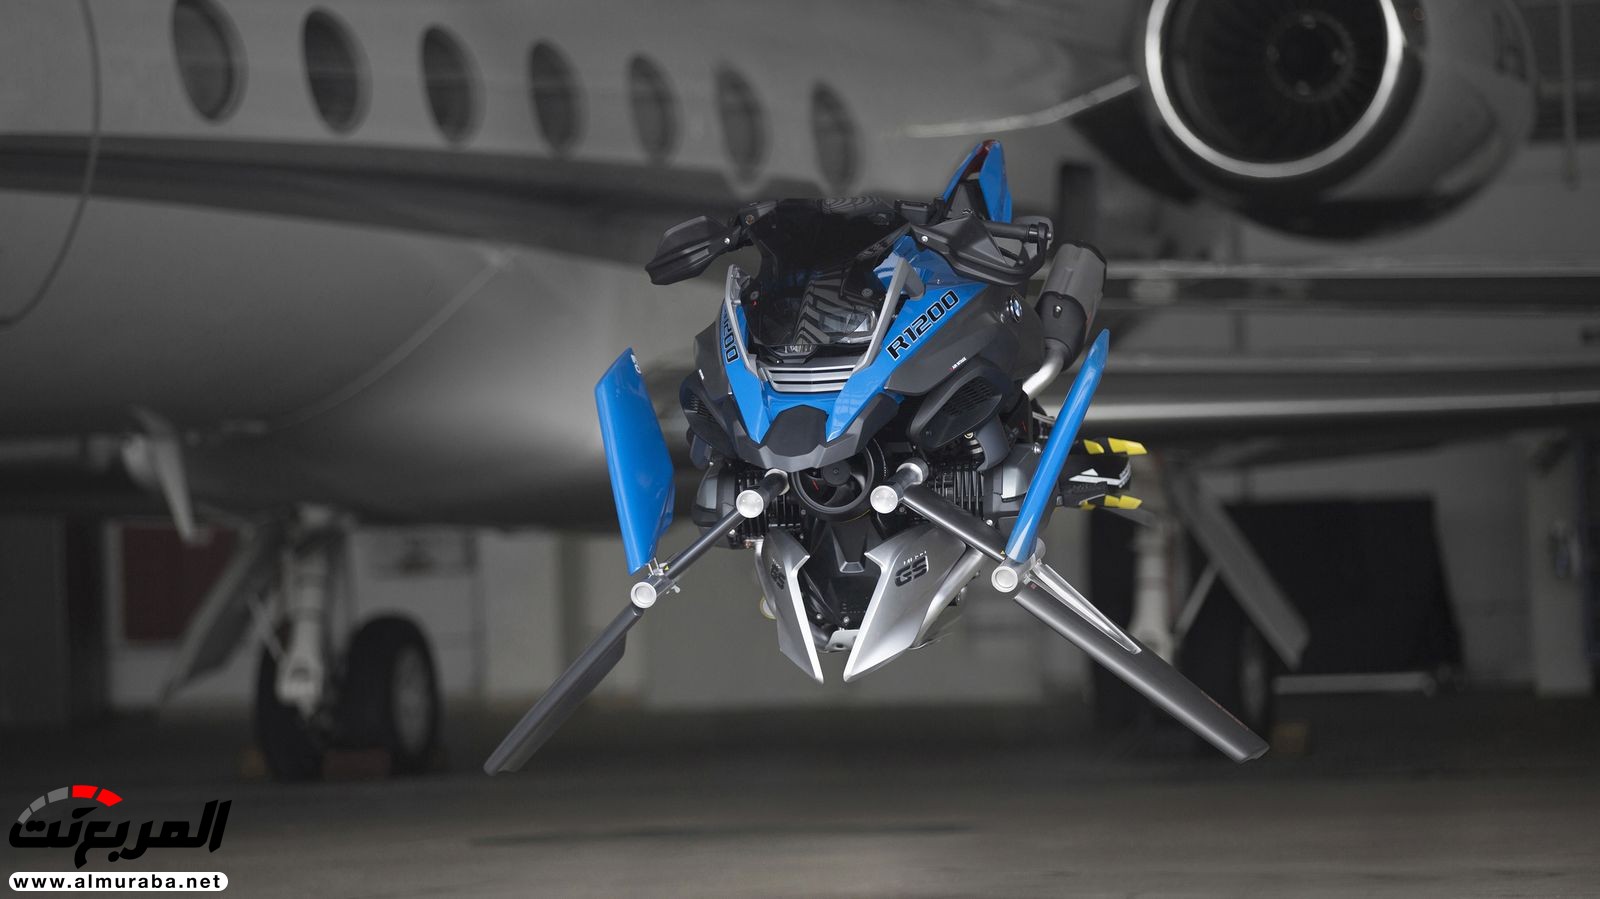 "بي إم دبليو" تكشف عن كونسبت الدراجة النارية الطائرة بعالم ليجو BMW 37